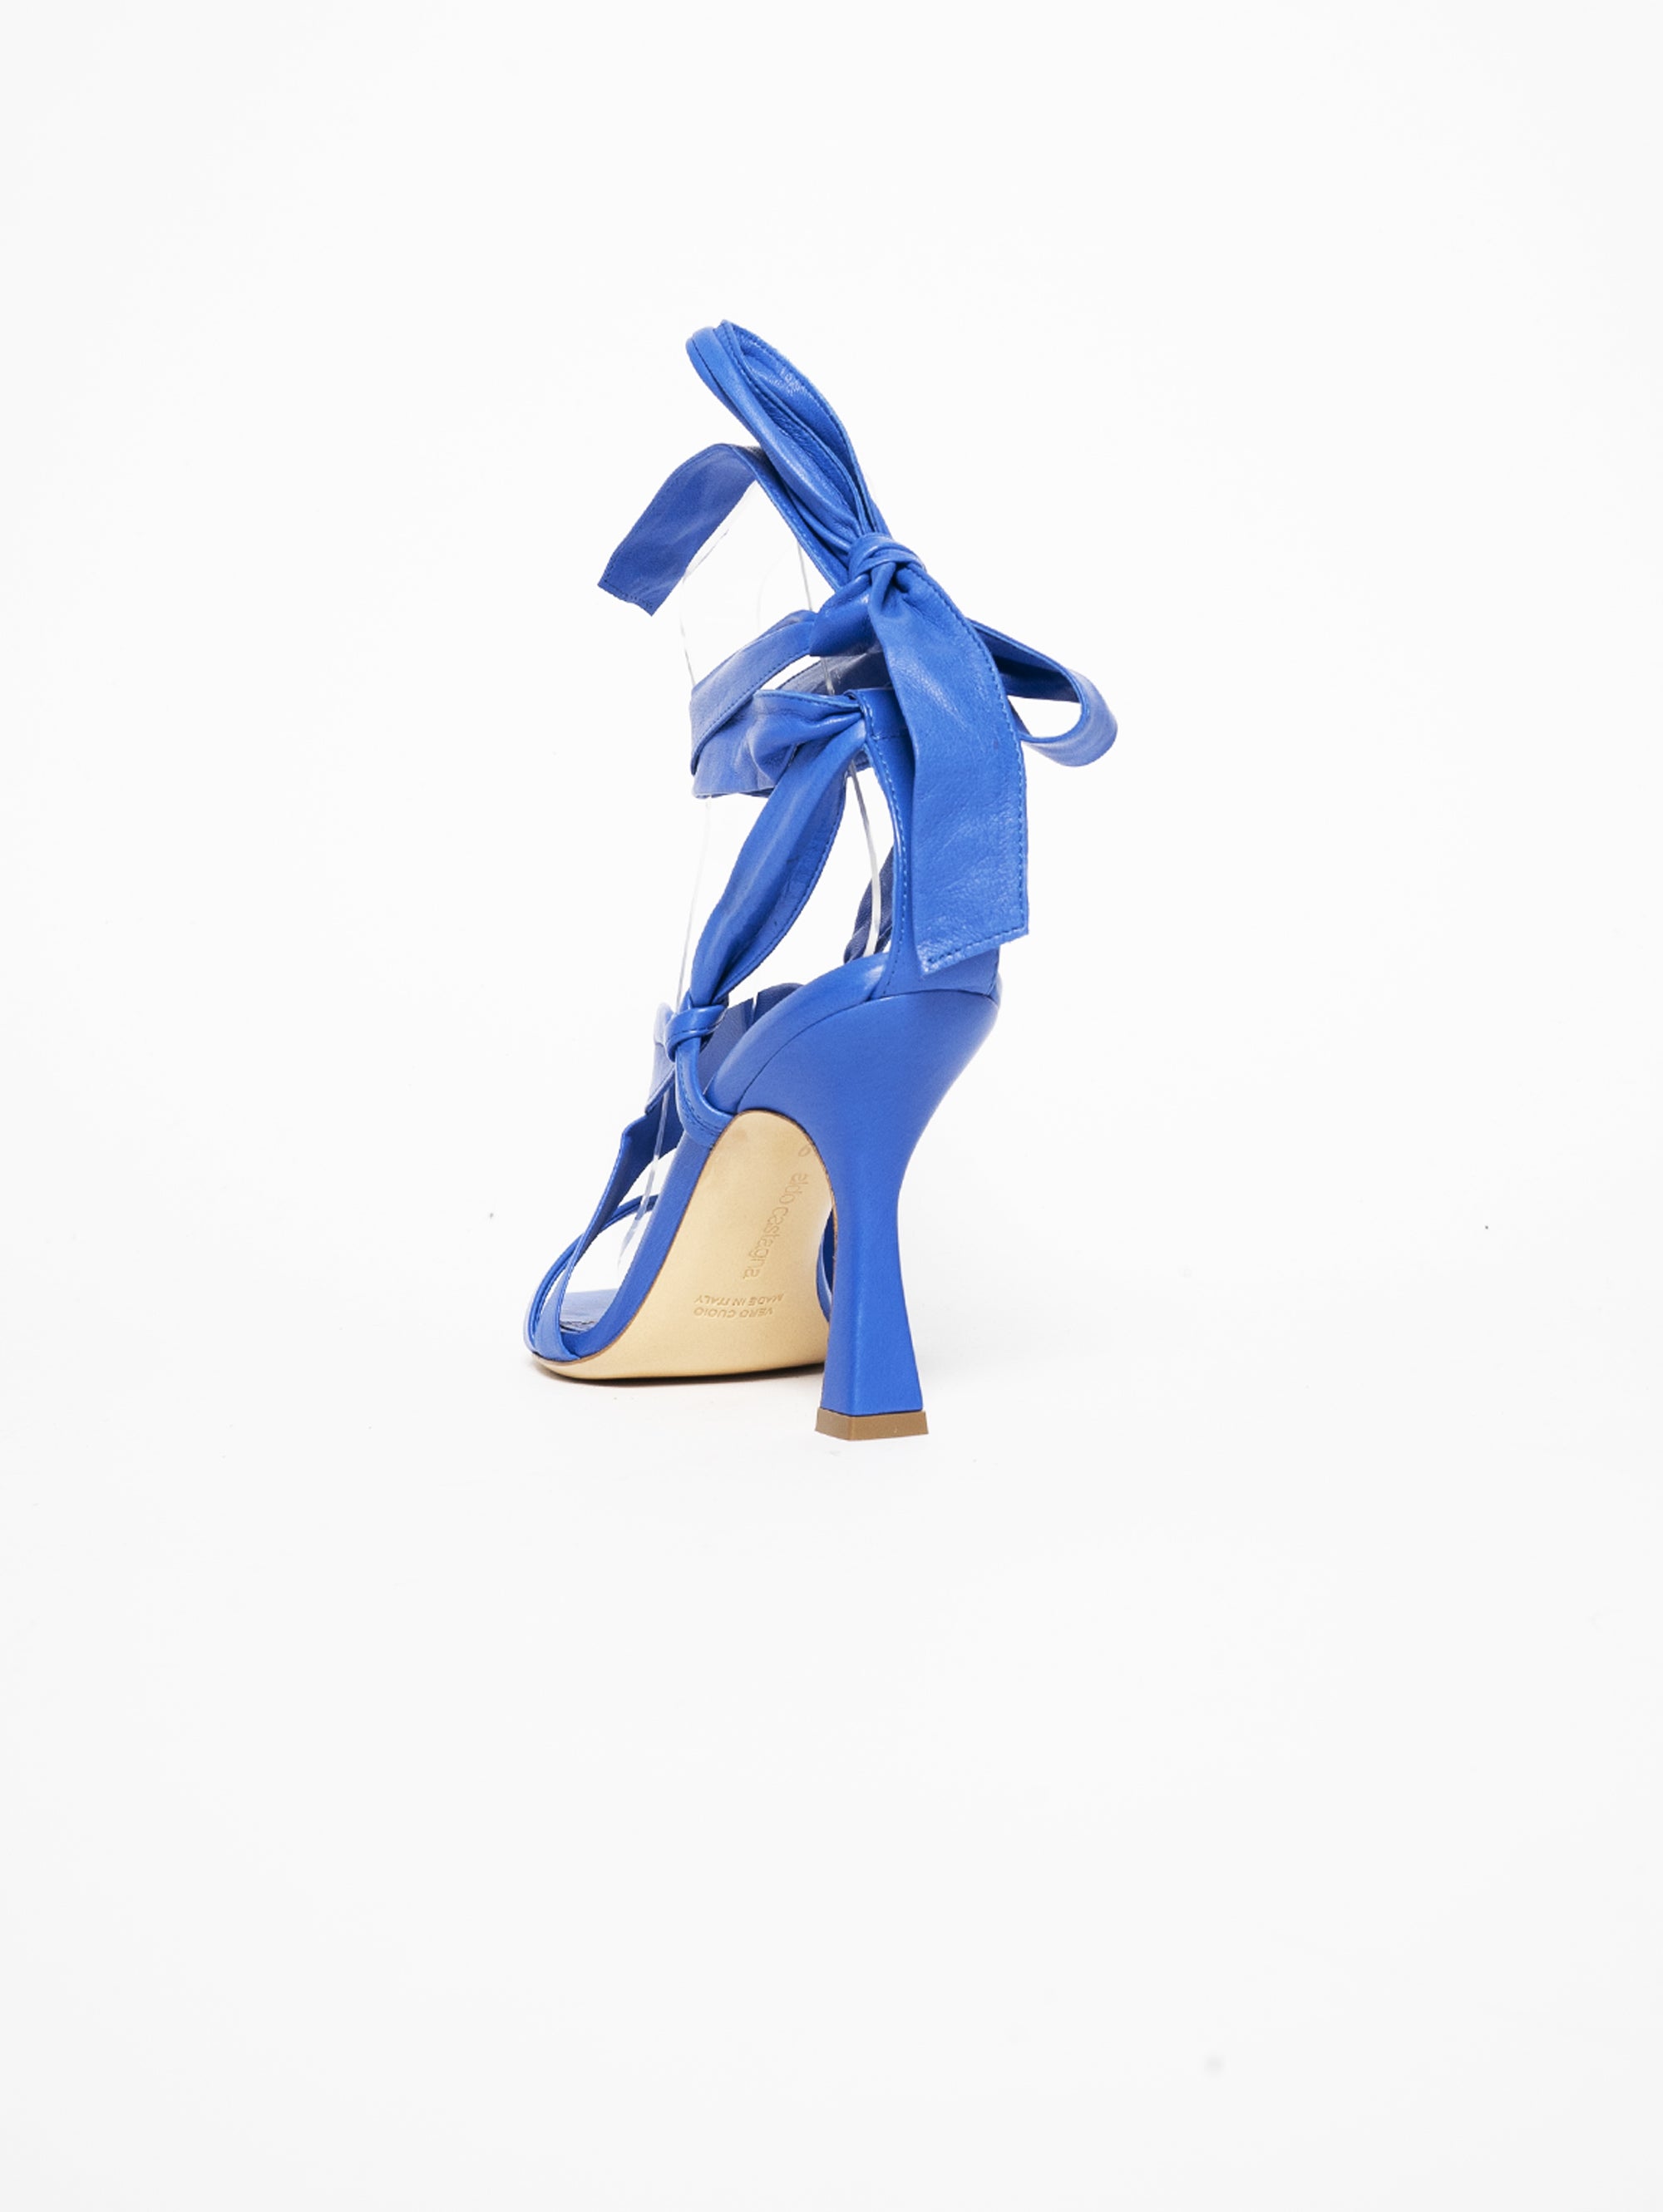 Sandalen mit Bluette-Schnürsenkeln